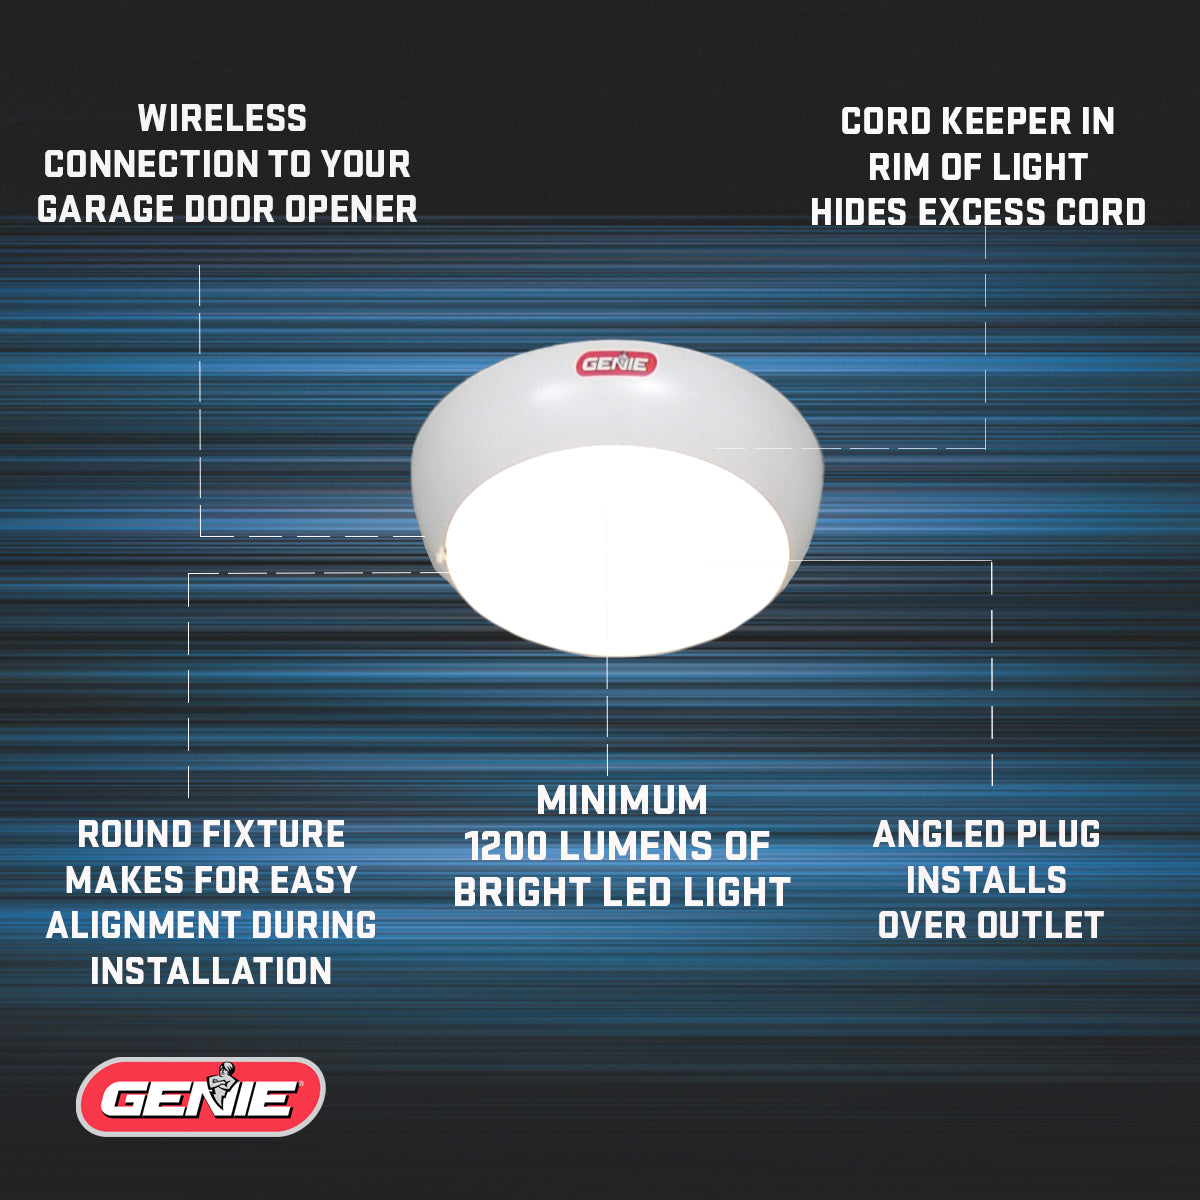 Genie wireless LED light for the Wall Mount garage door opener 